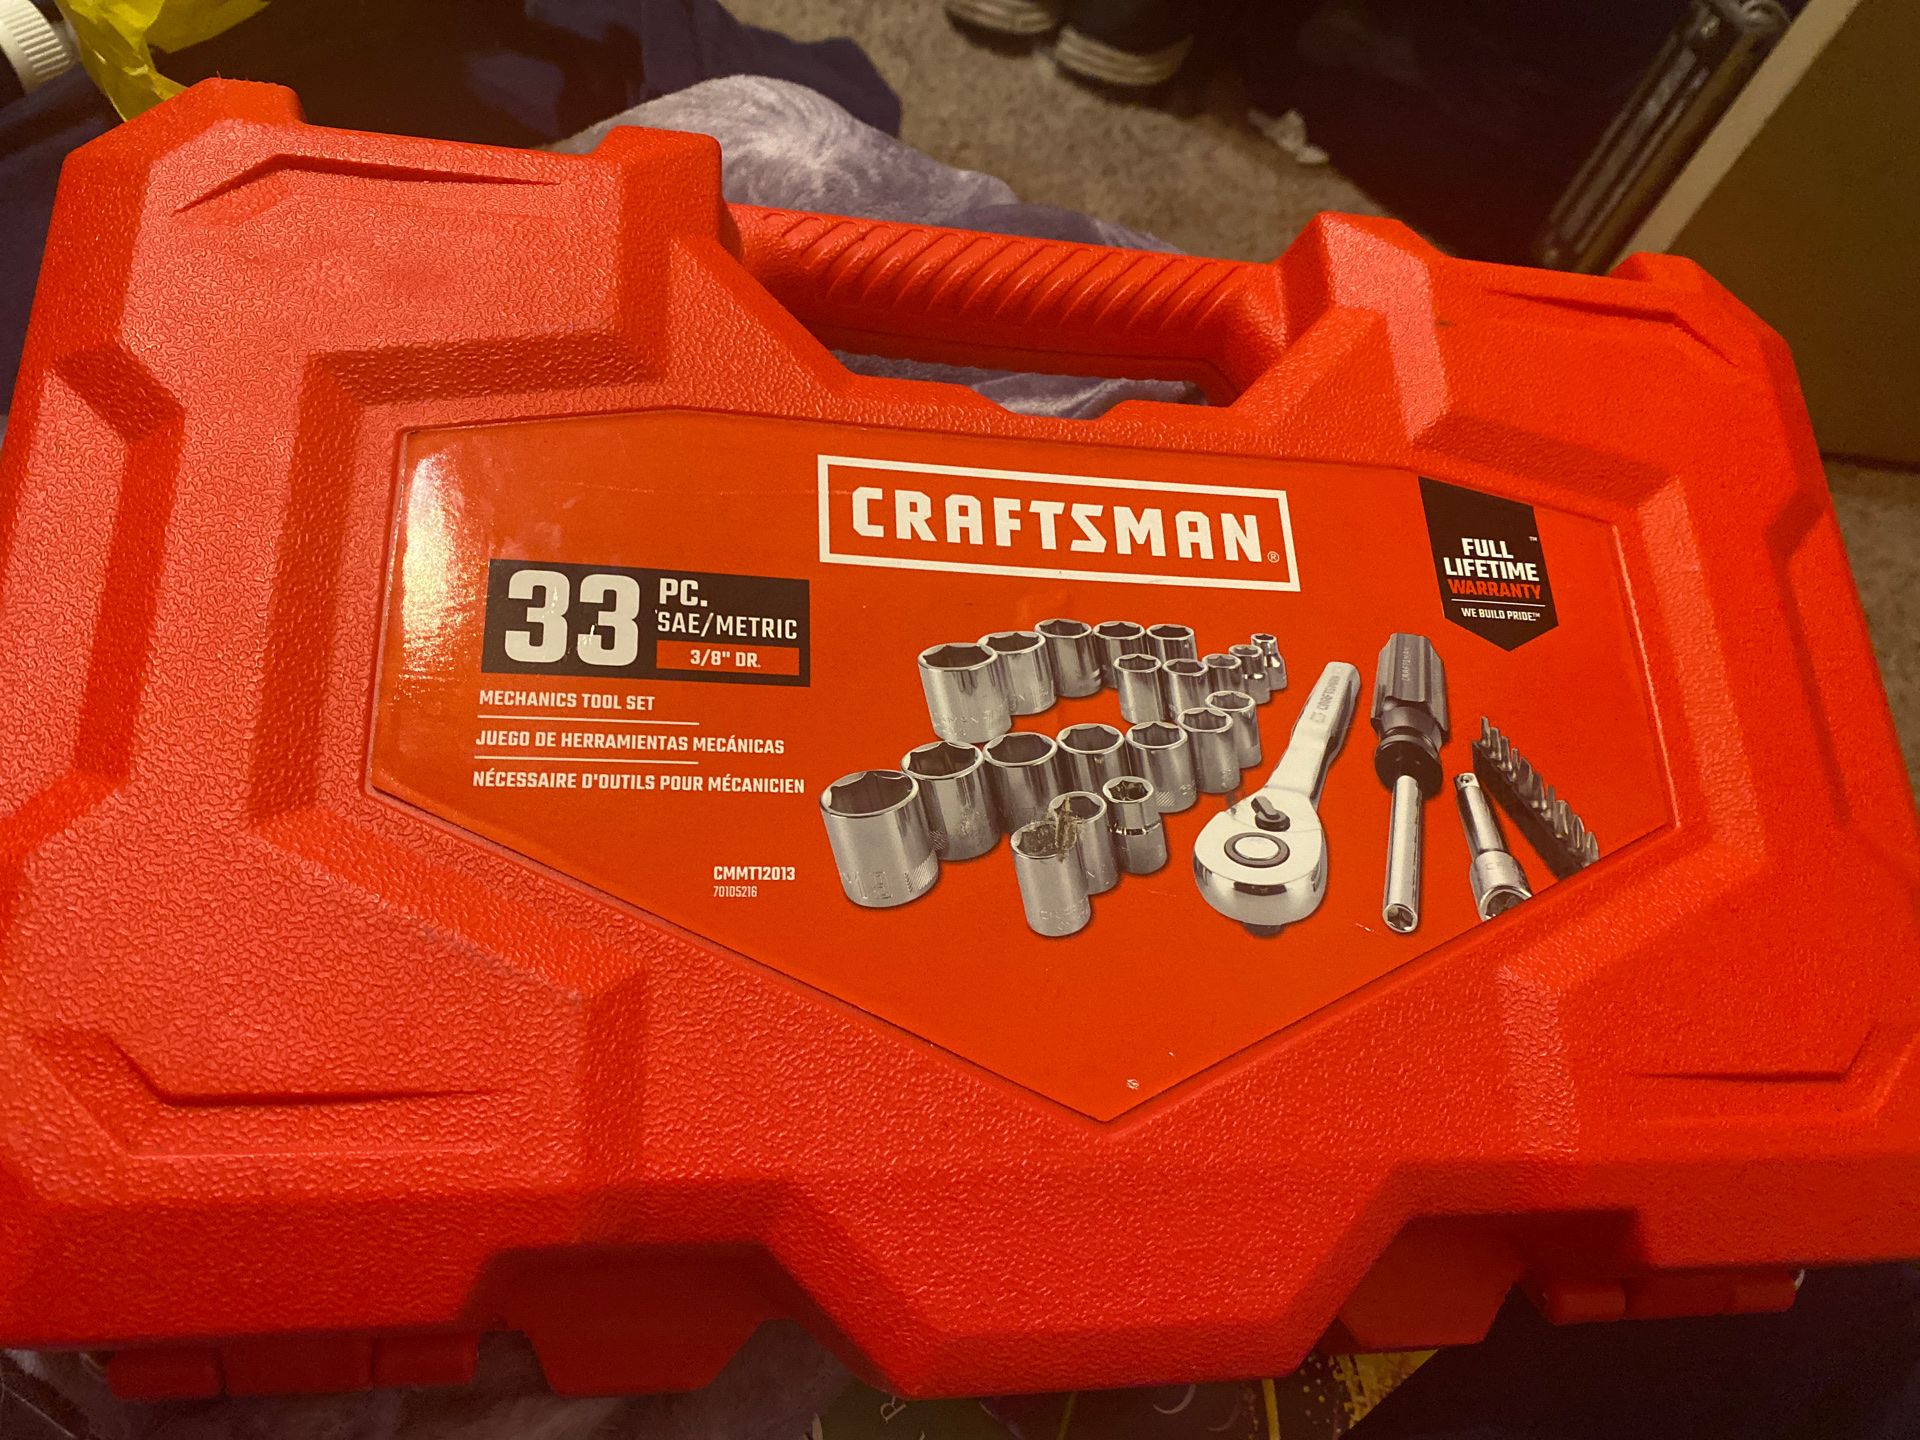 Craftsman tool wrench set